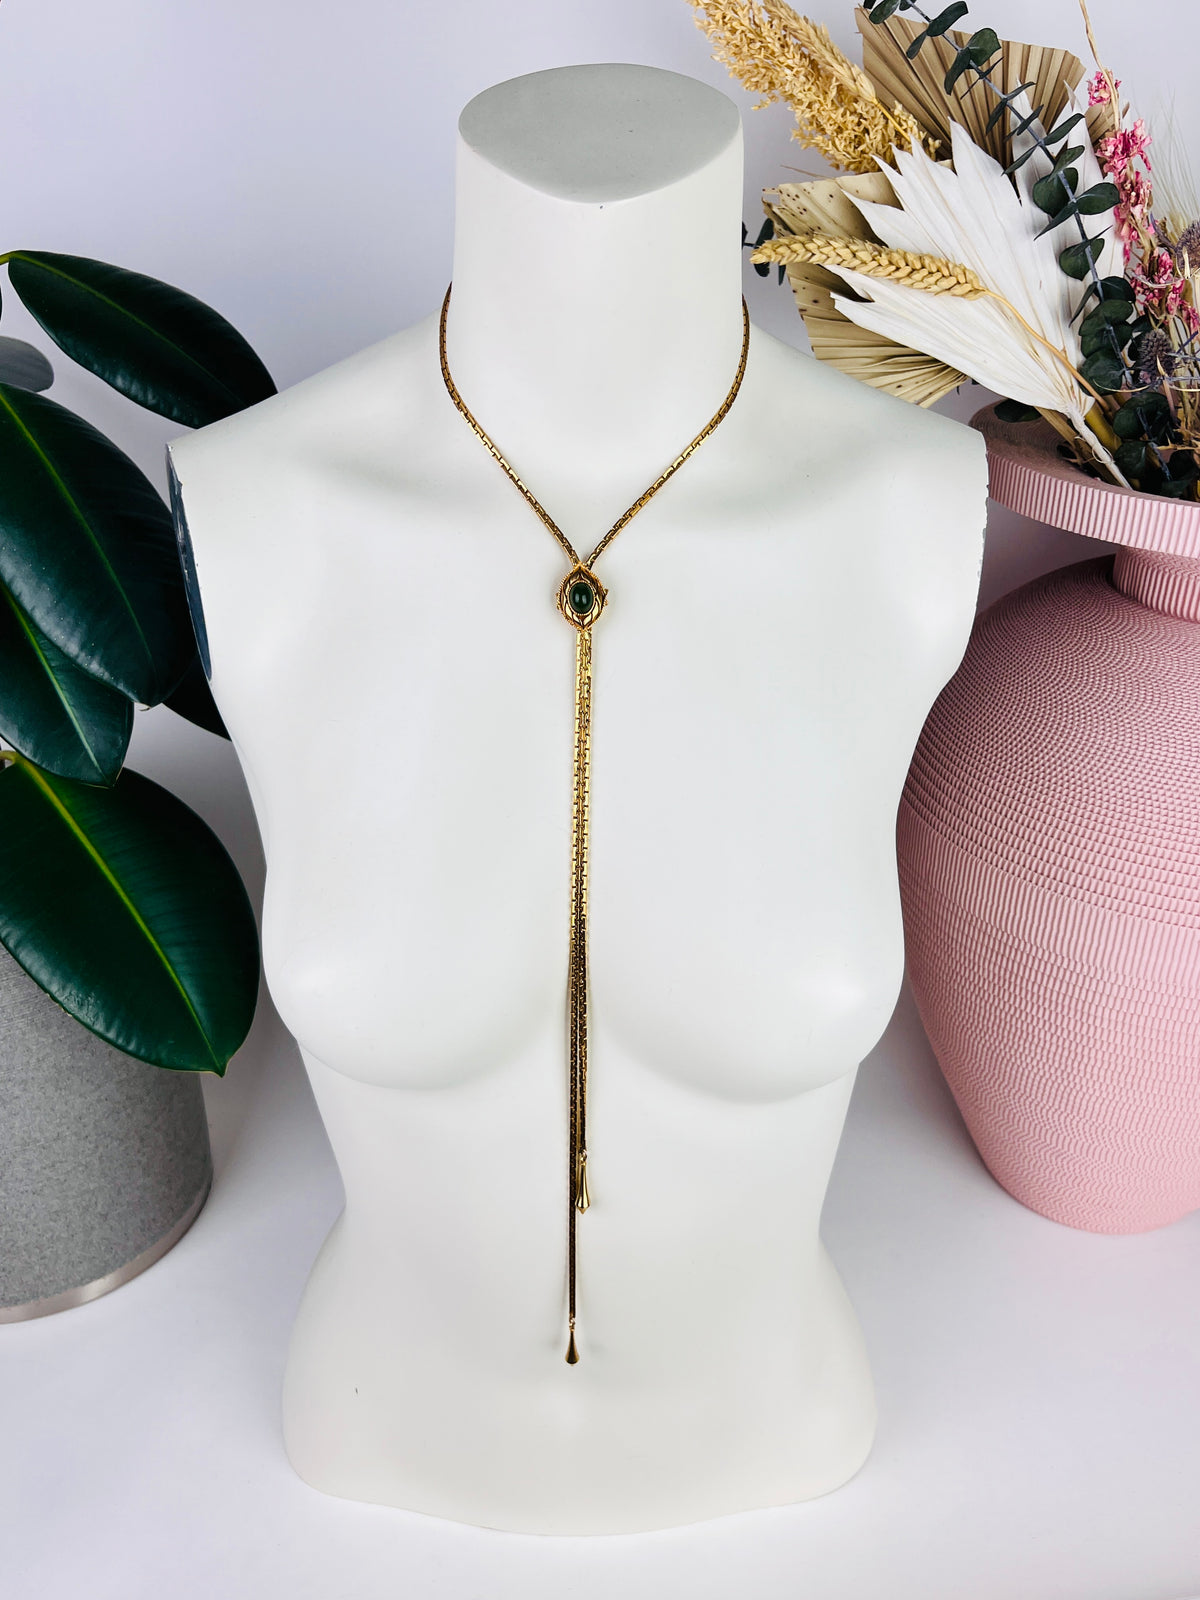 Vintage Adjustable Gold-Plated Necklace